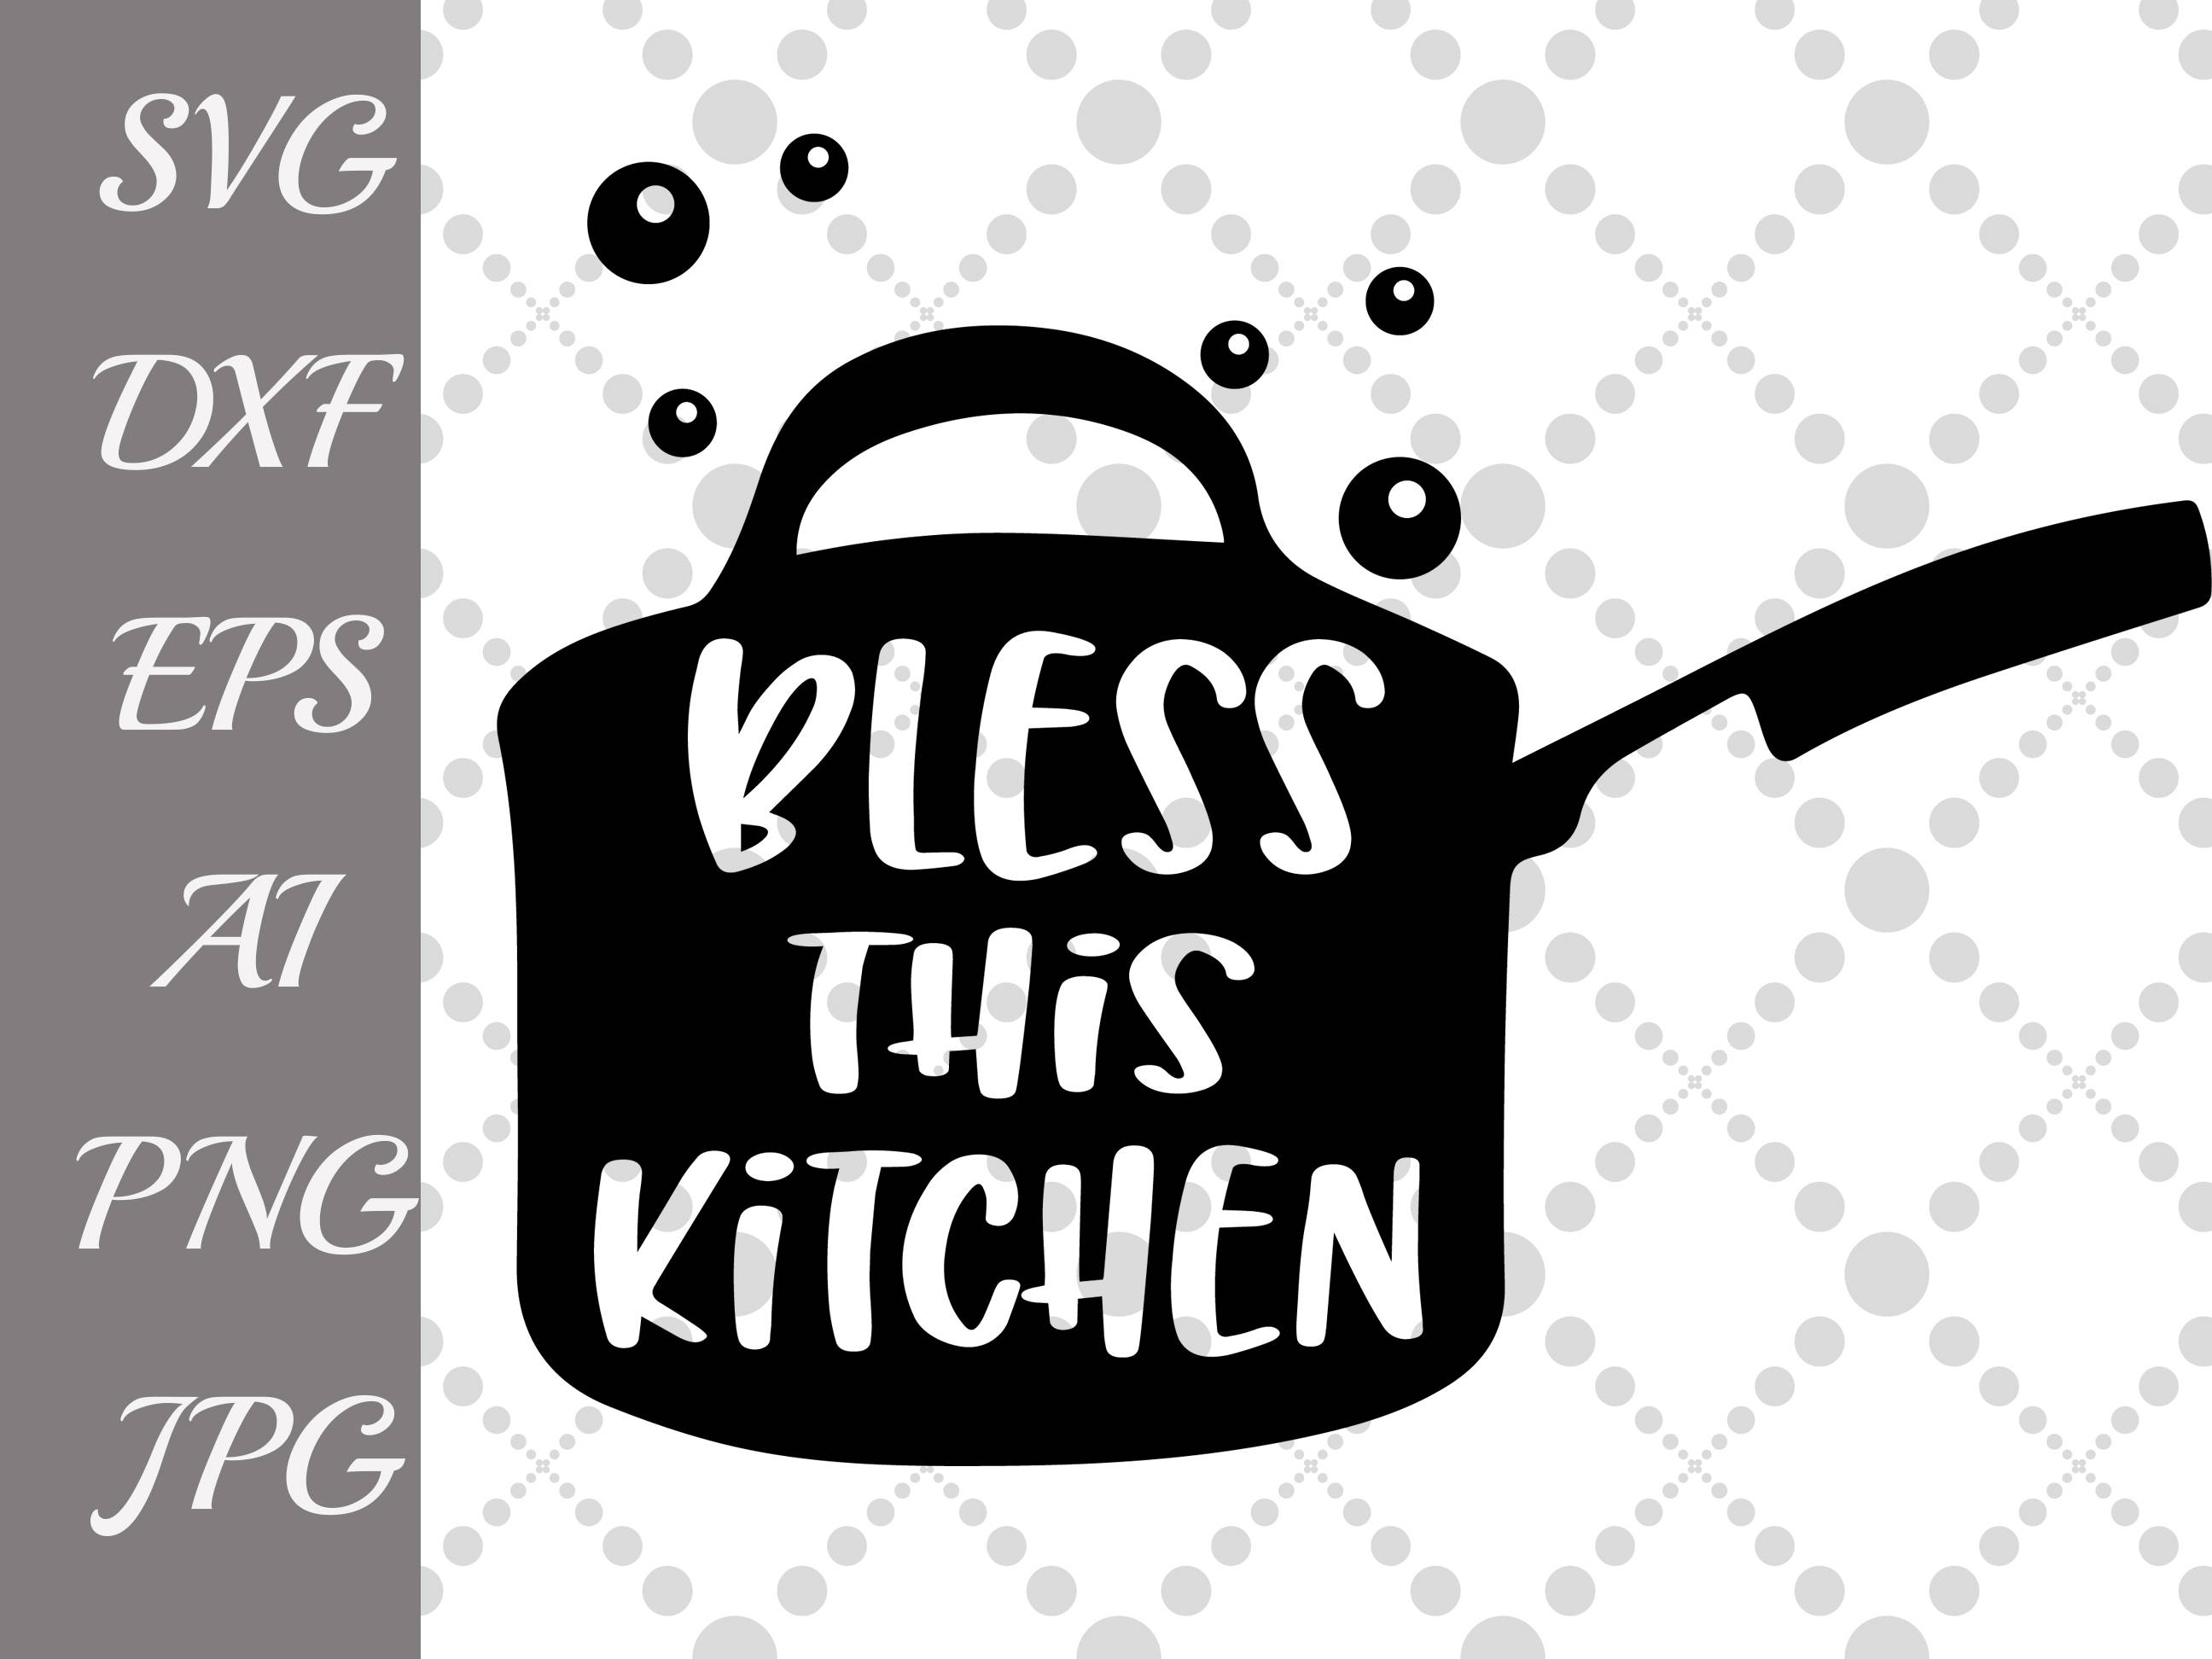 Download Bless This Kitchen Svg: KITCHEN QUOTE SVG Kitchen